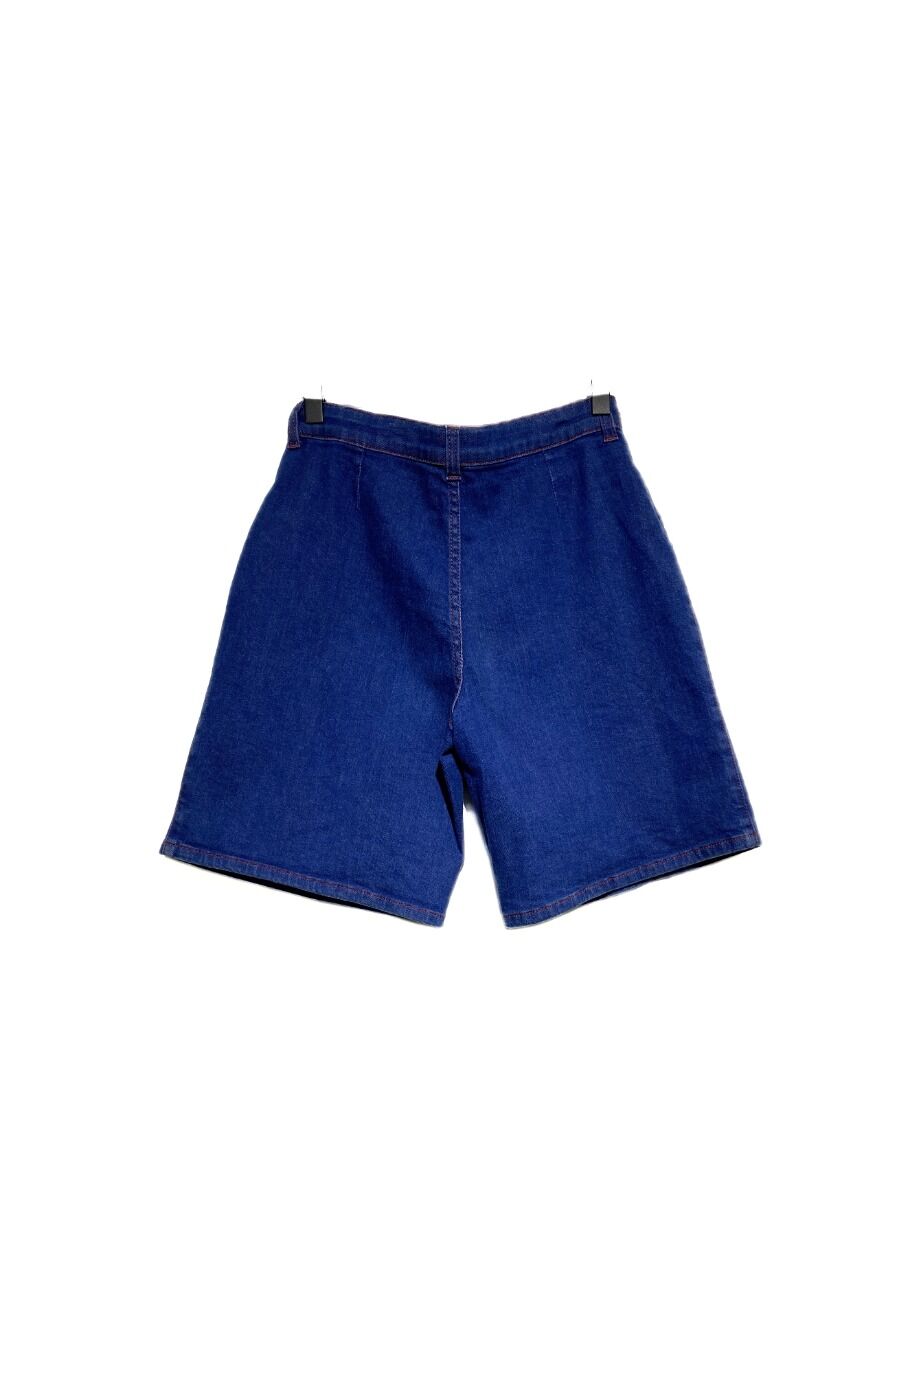 image 2 Детские джинсовые шорты синего цвета с красной строчкой